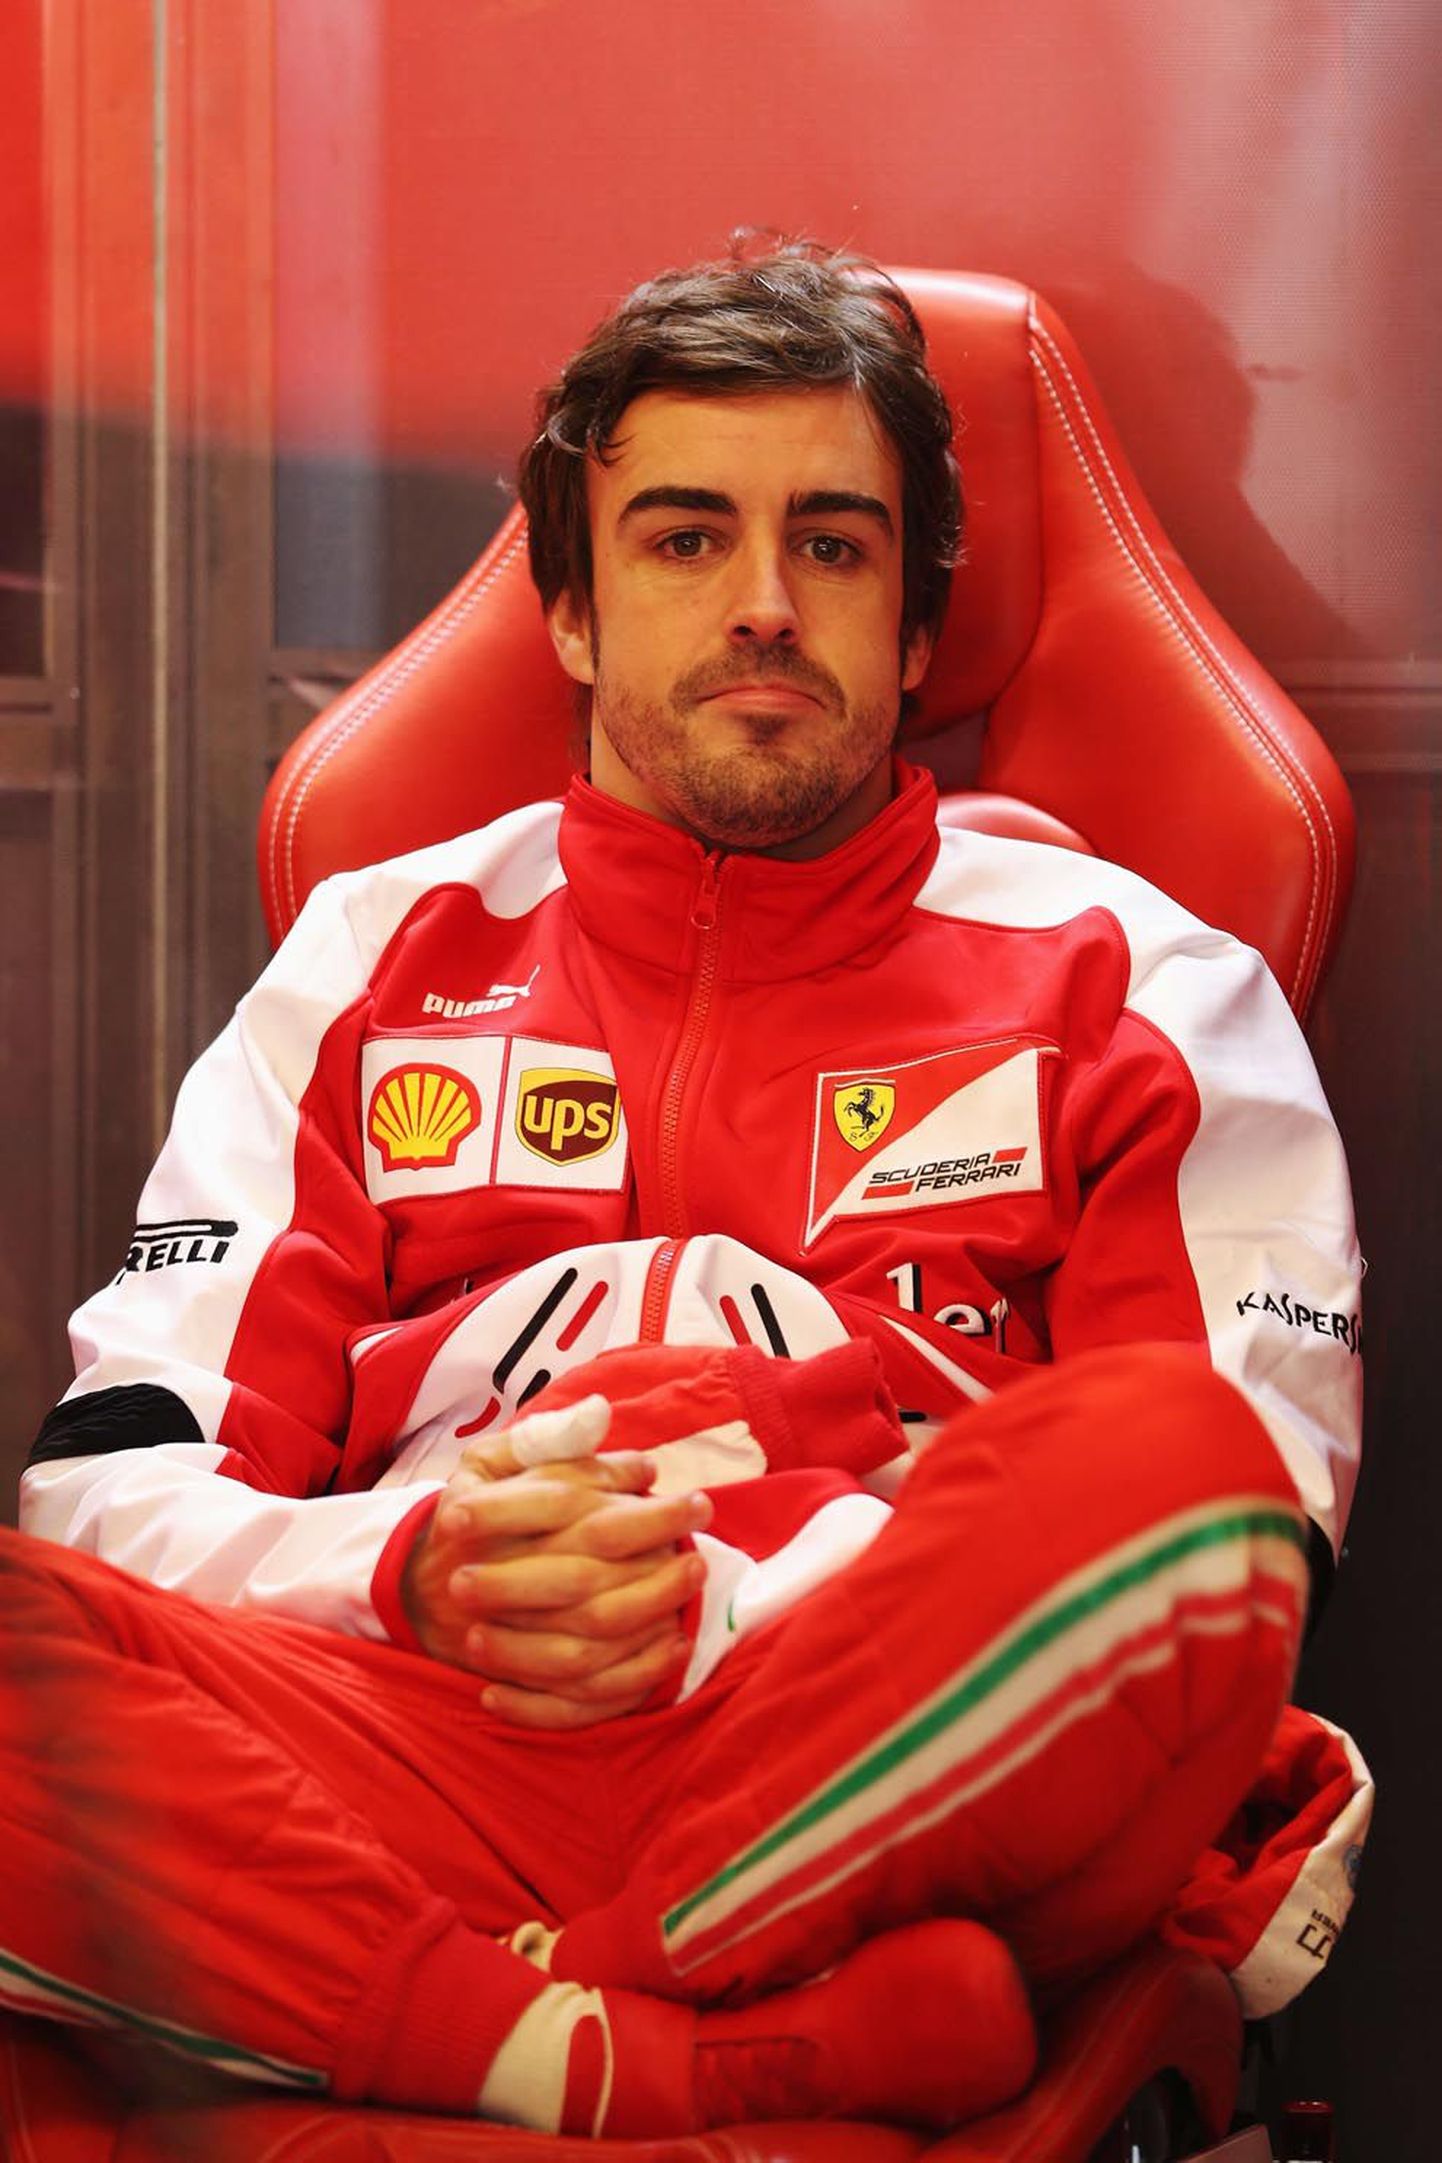 Fernando Alonsol on mõtlemisainet piisavalt: kui Ferrarist lahkuda, tuleb üsna kiiresti leida uus tiim.